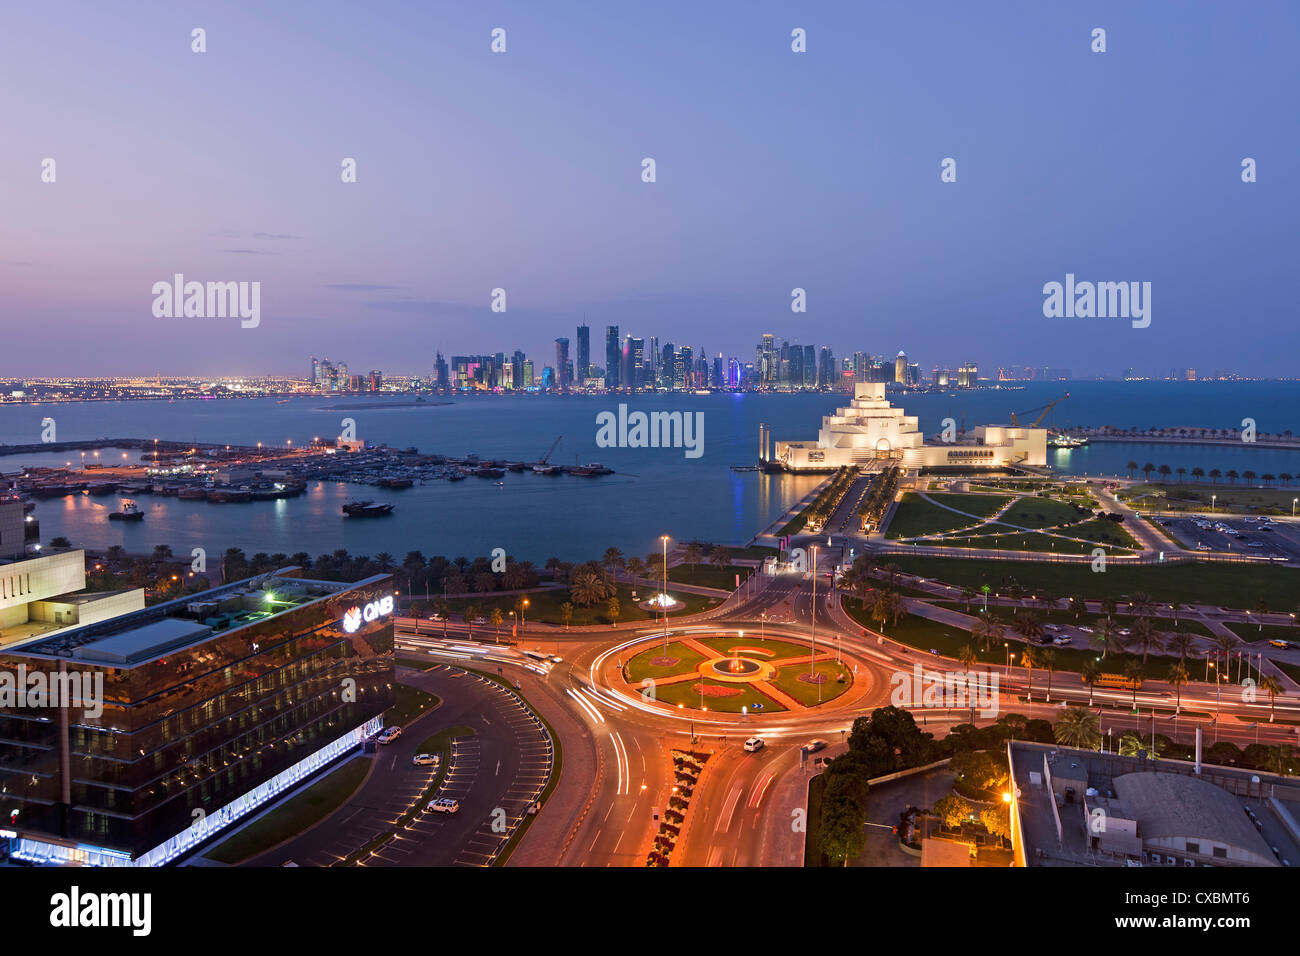 Des vue sur le musée d'art islamique et le Dhow Harbour à l'horizon de gratte-ciel modernes, Doha, Qatar, Moyen-Orient Banque D'Images